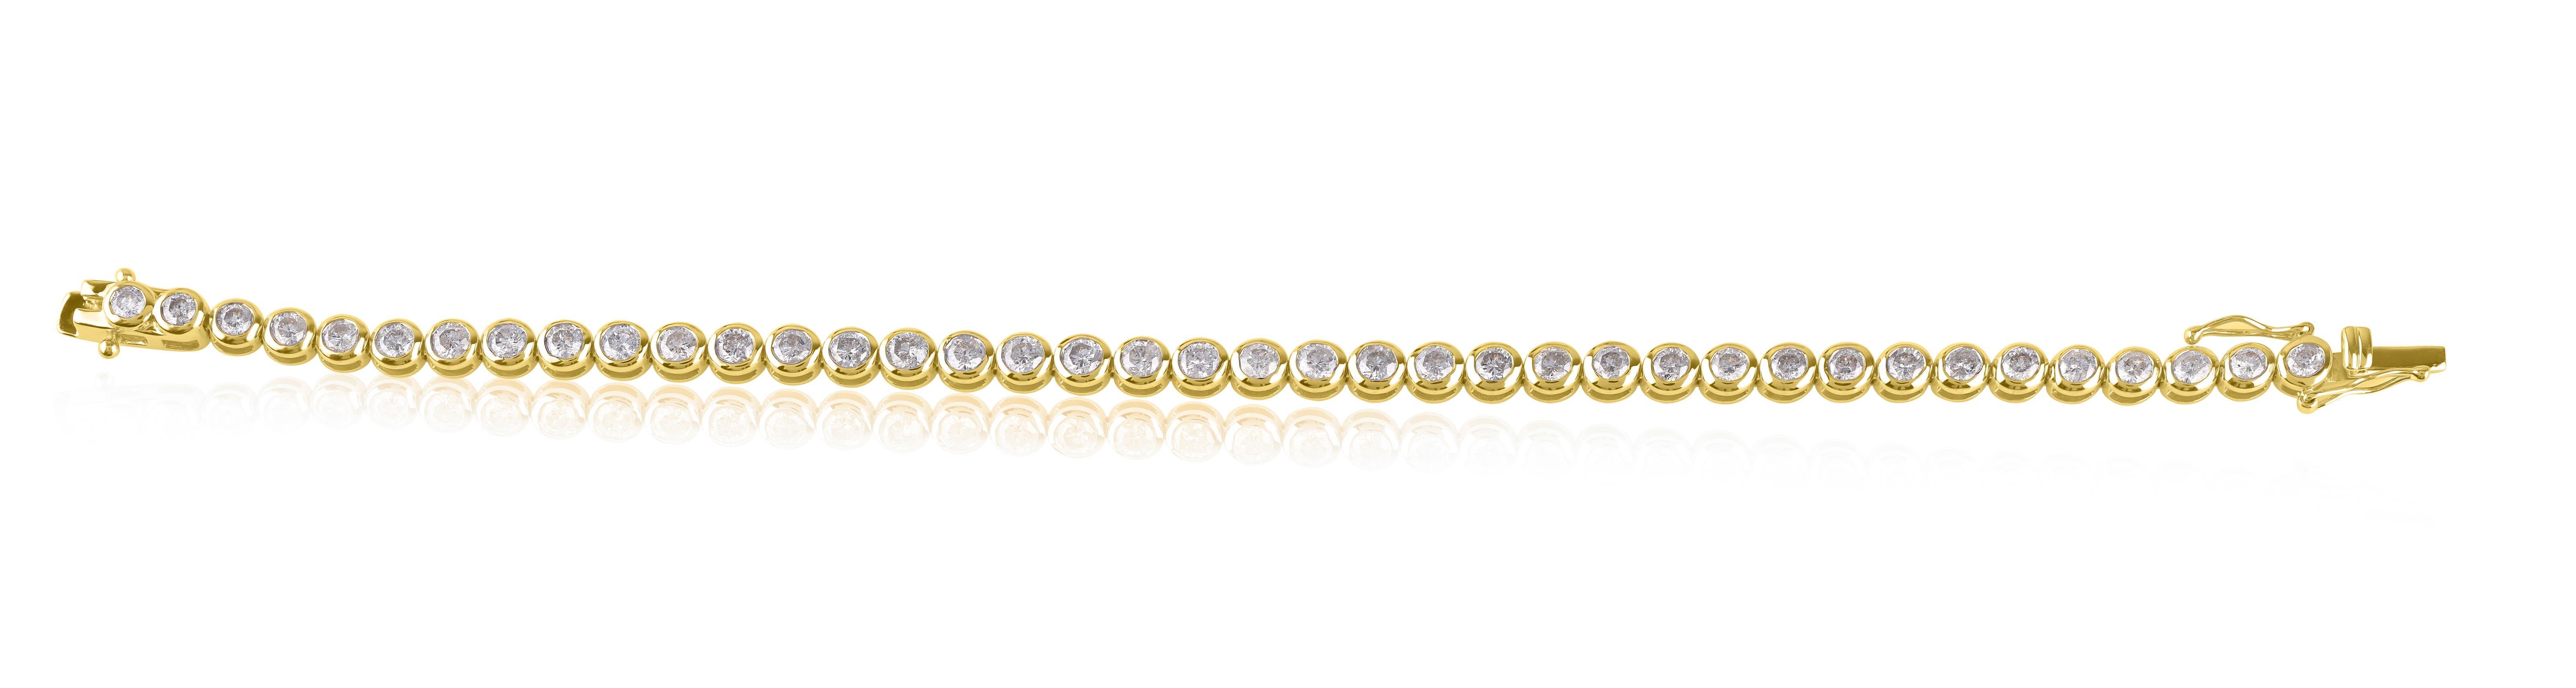 Lassen Sie Ihr Handgelenk mit diesem schillernden Diamant-Tennisarmband erstrahlen. 39 Diamanten im Rundschliff sind elegant in der Lünette gefasst. Die Diamanten sind mit HI Color, I2-I3 Clarity bewertet. Das Armband ist aus 14 KT Gelbgold